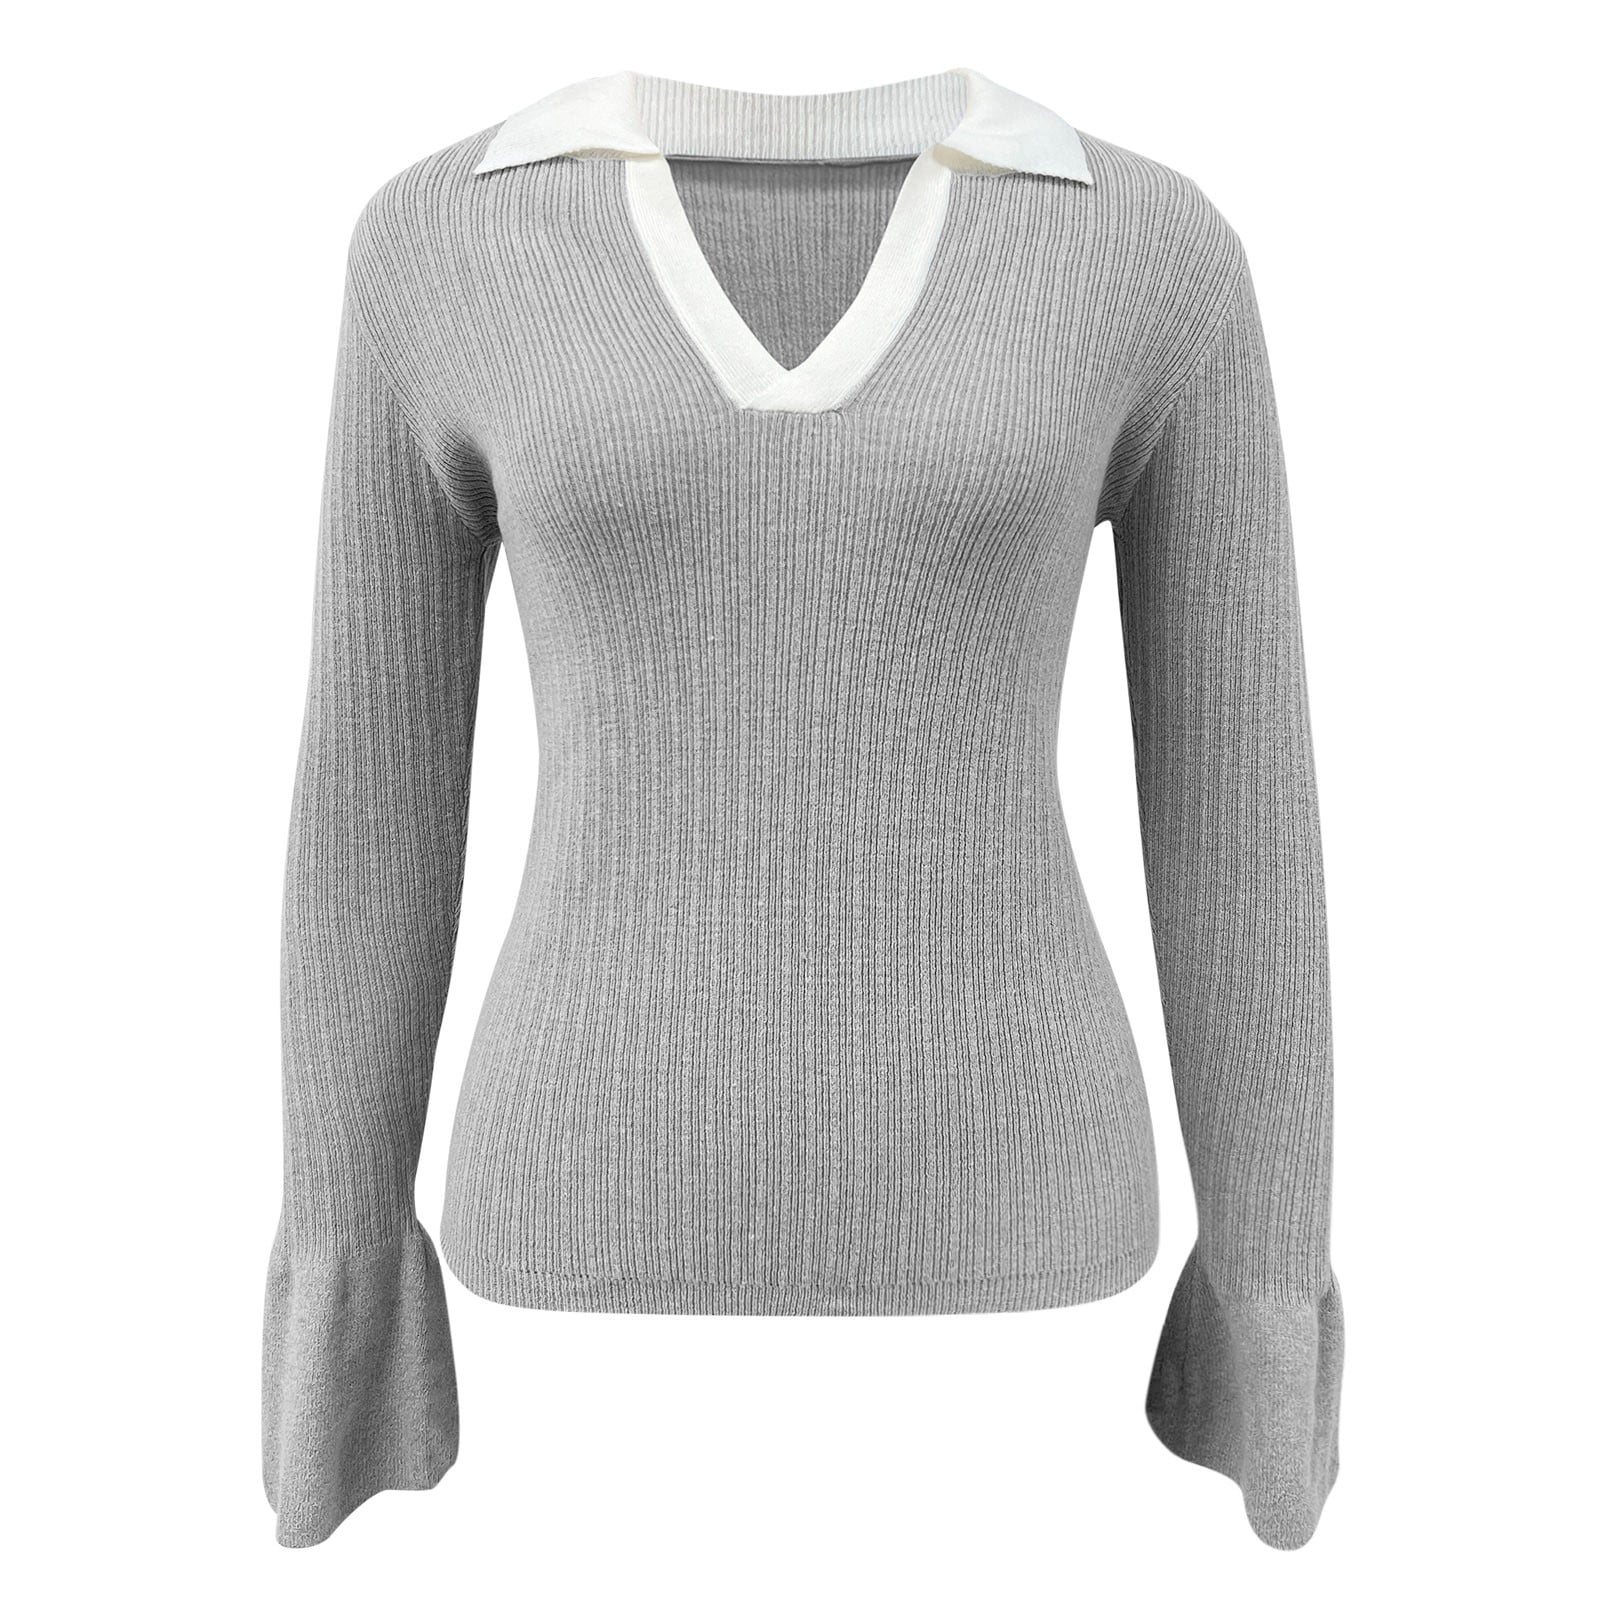 Aayomet Long Sweater Cardigan Women Women's Sweaters Long Sleeve